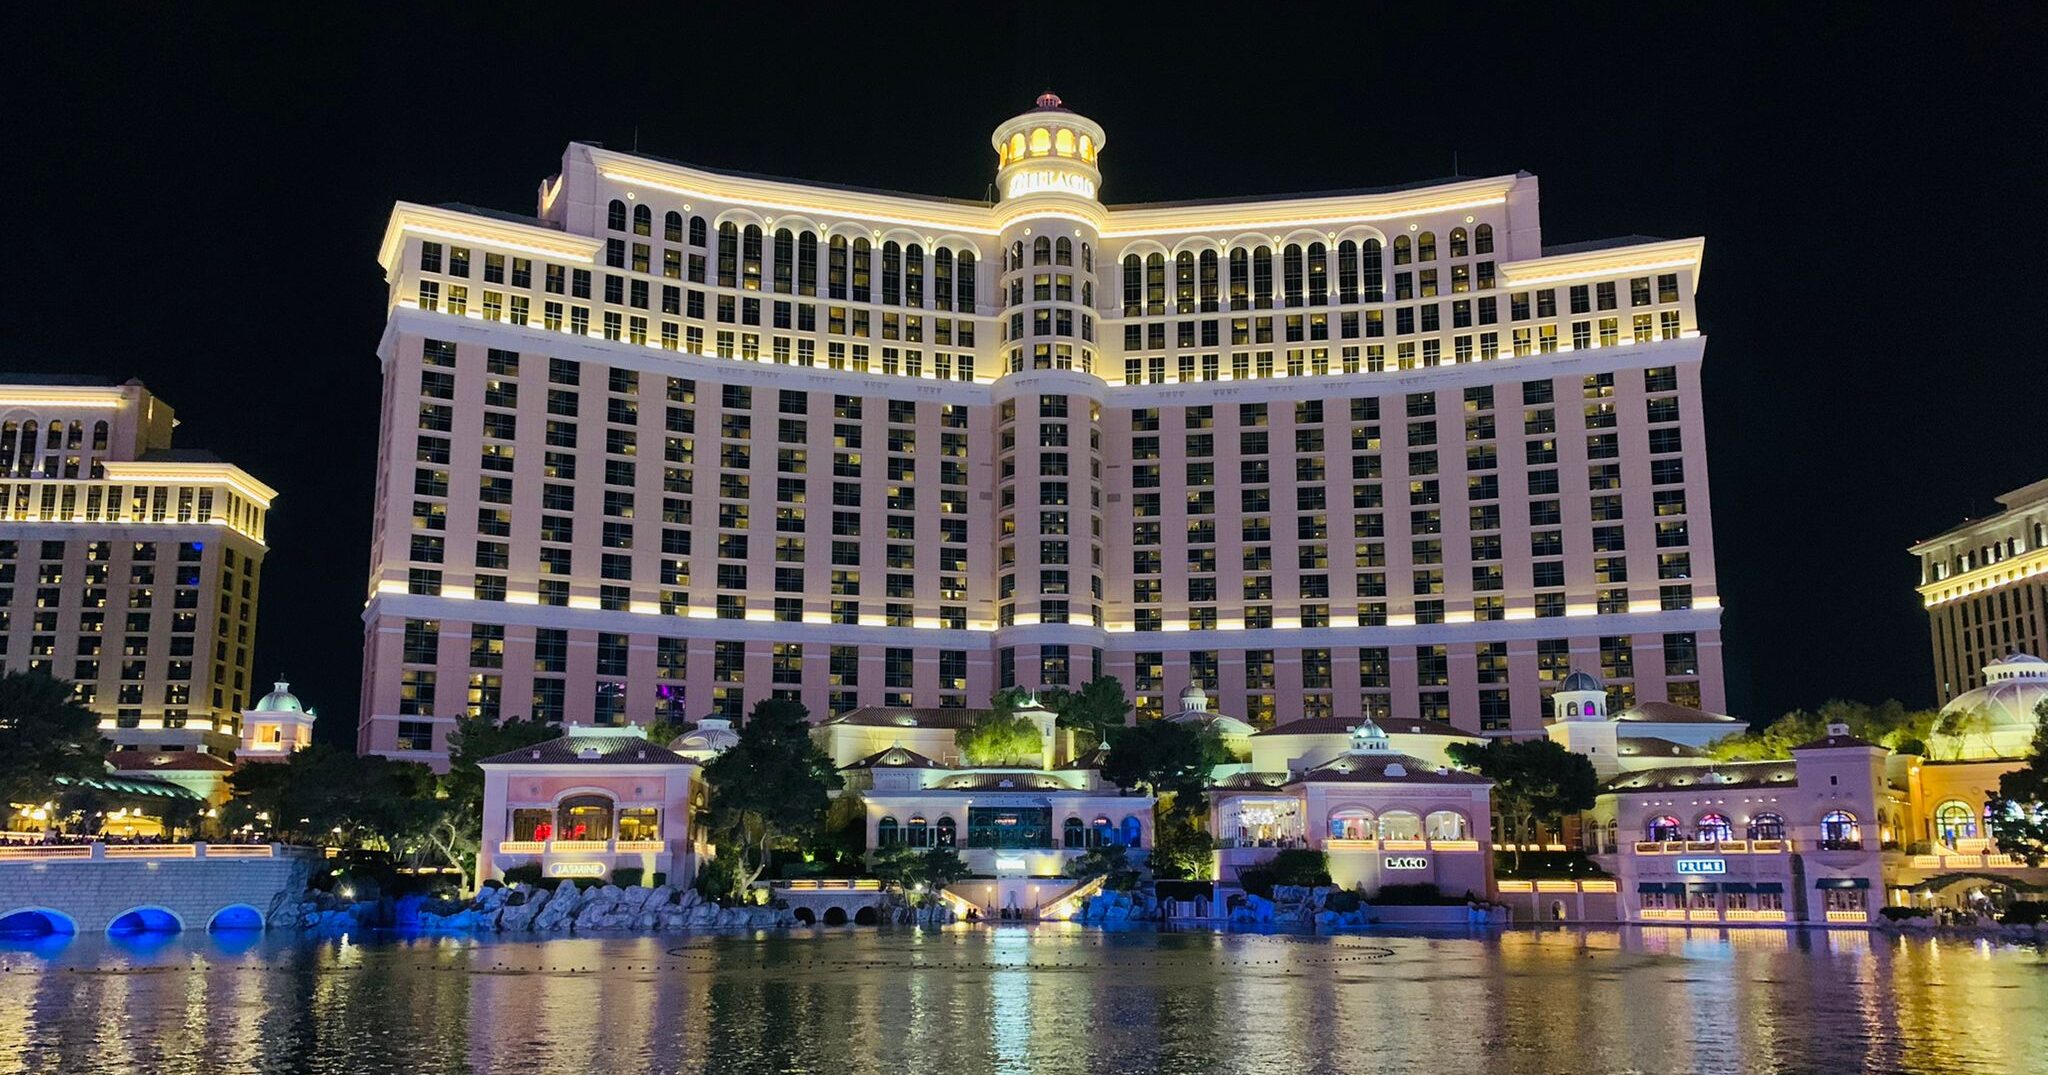 Bellagio - One of the best looking Las Vegas hotels